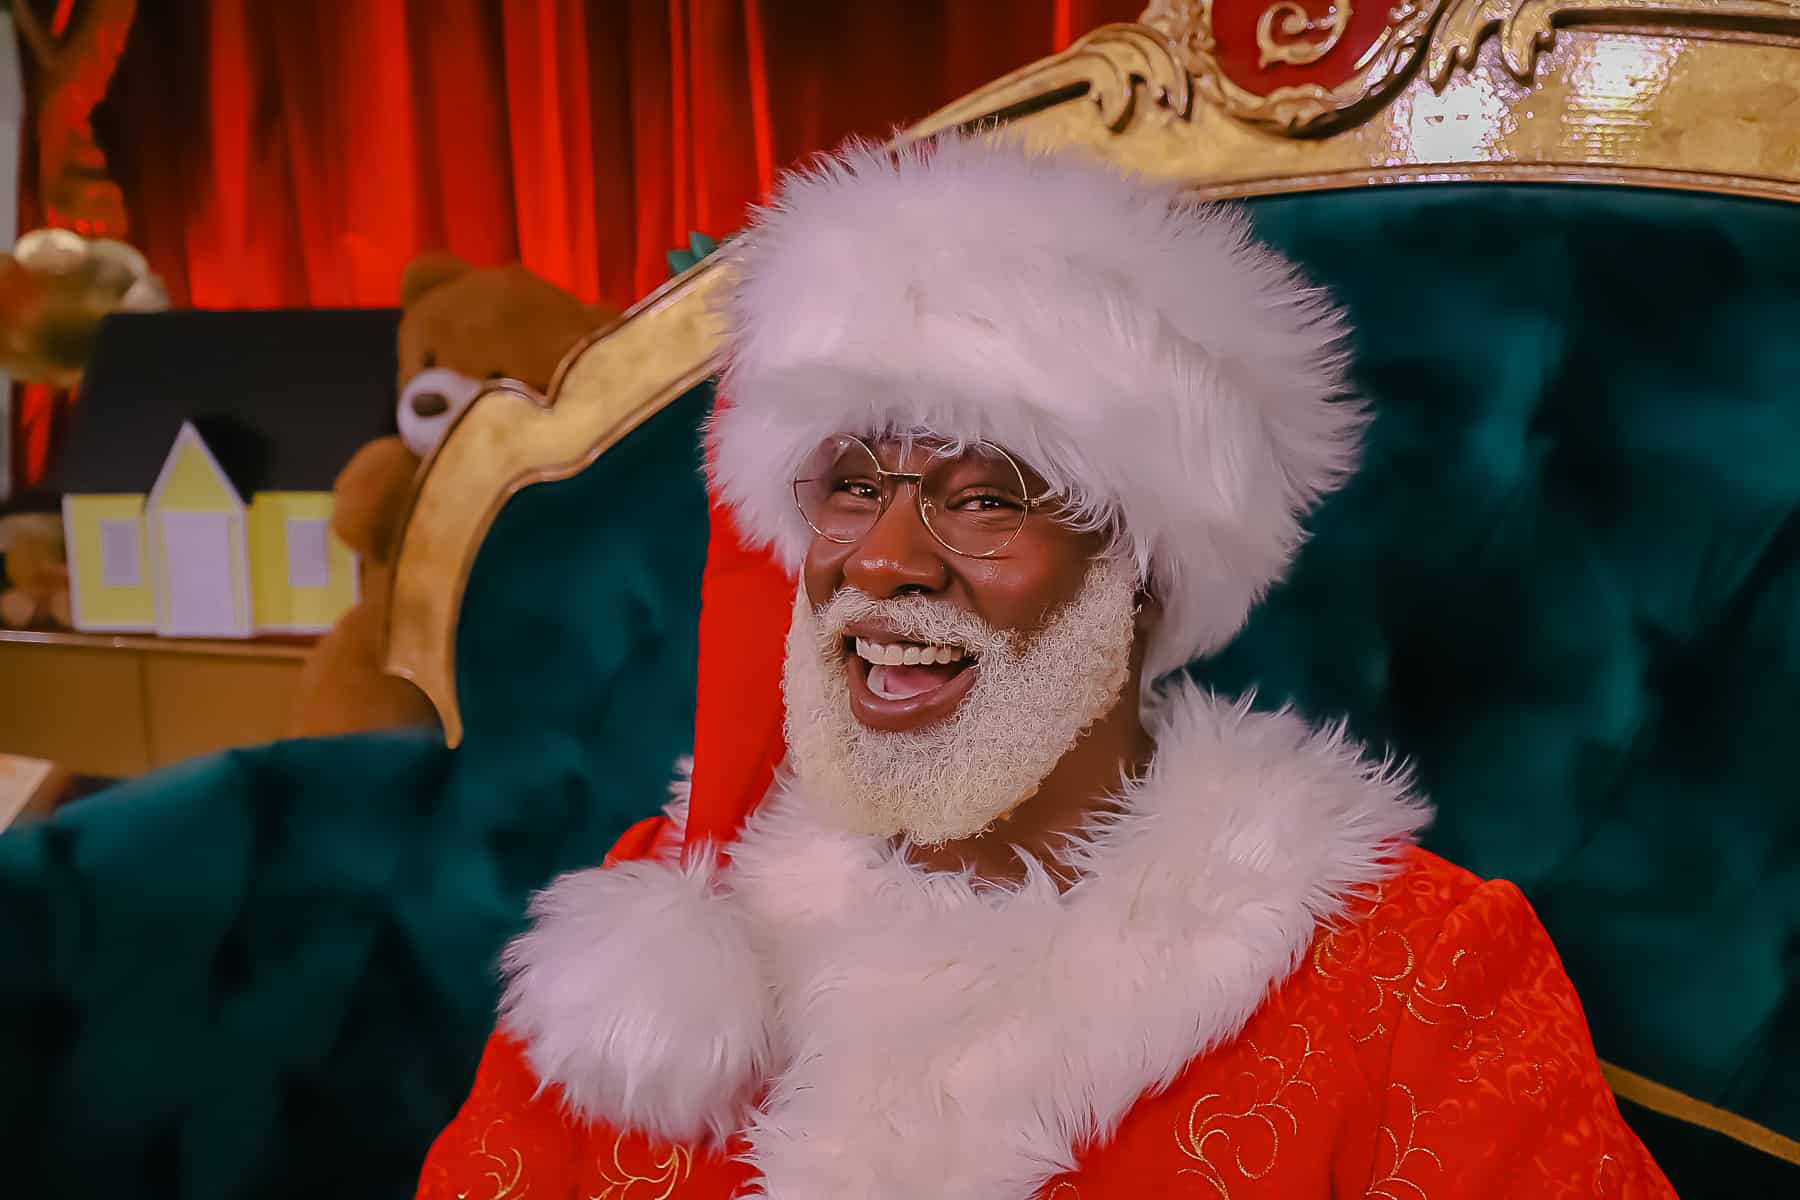 Santa Claus Meet and Greet at Hollywood Studios